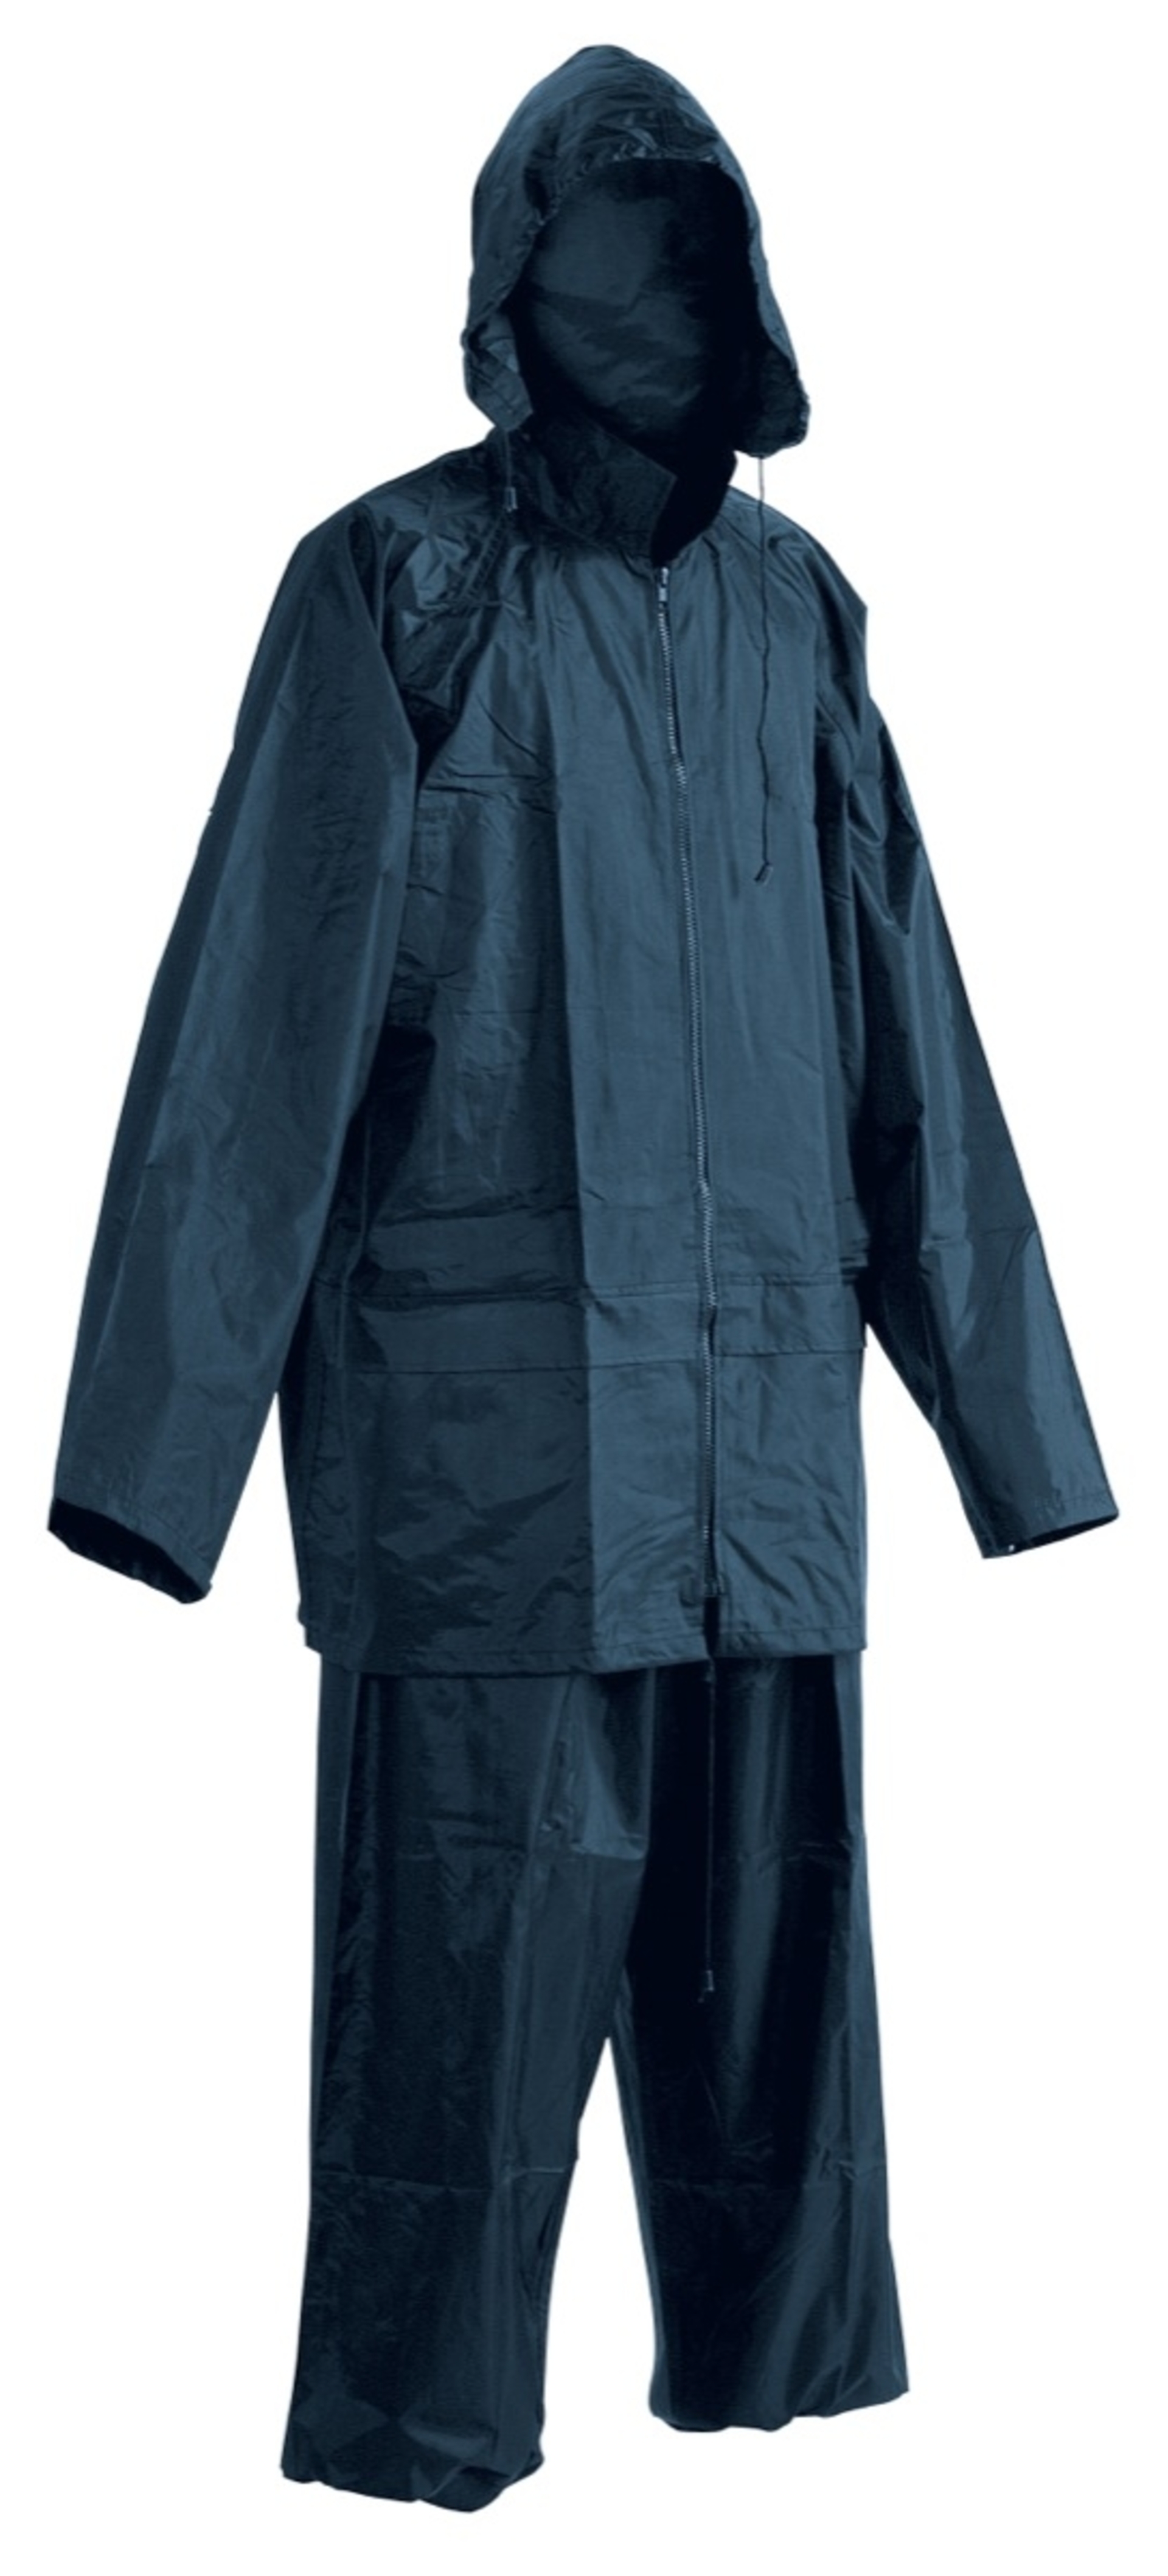 Cerva CARINA Oblek nepromokavý modrá L + Bezplatné vrácení zboží